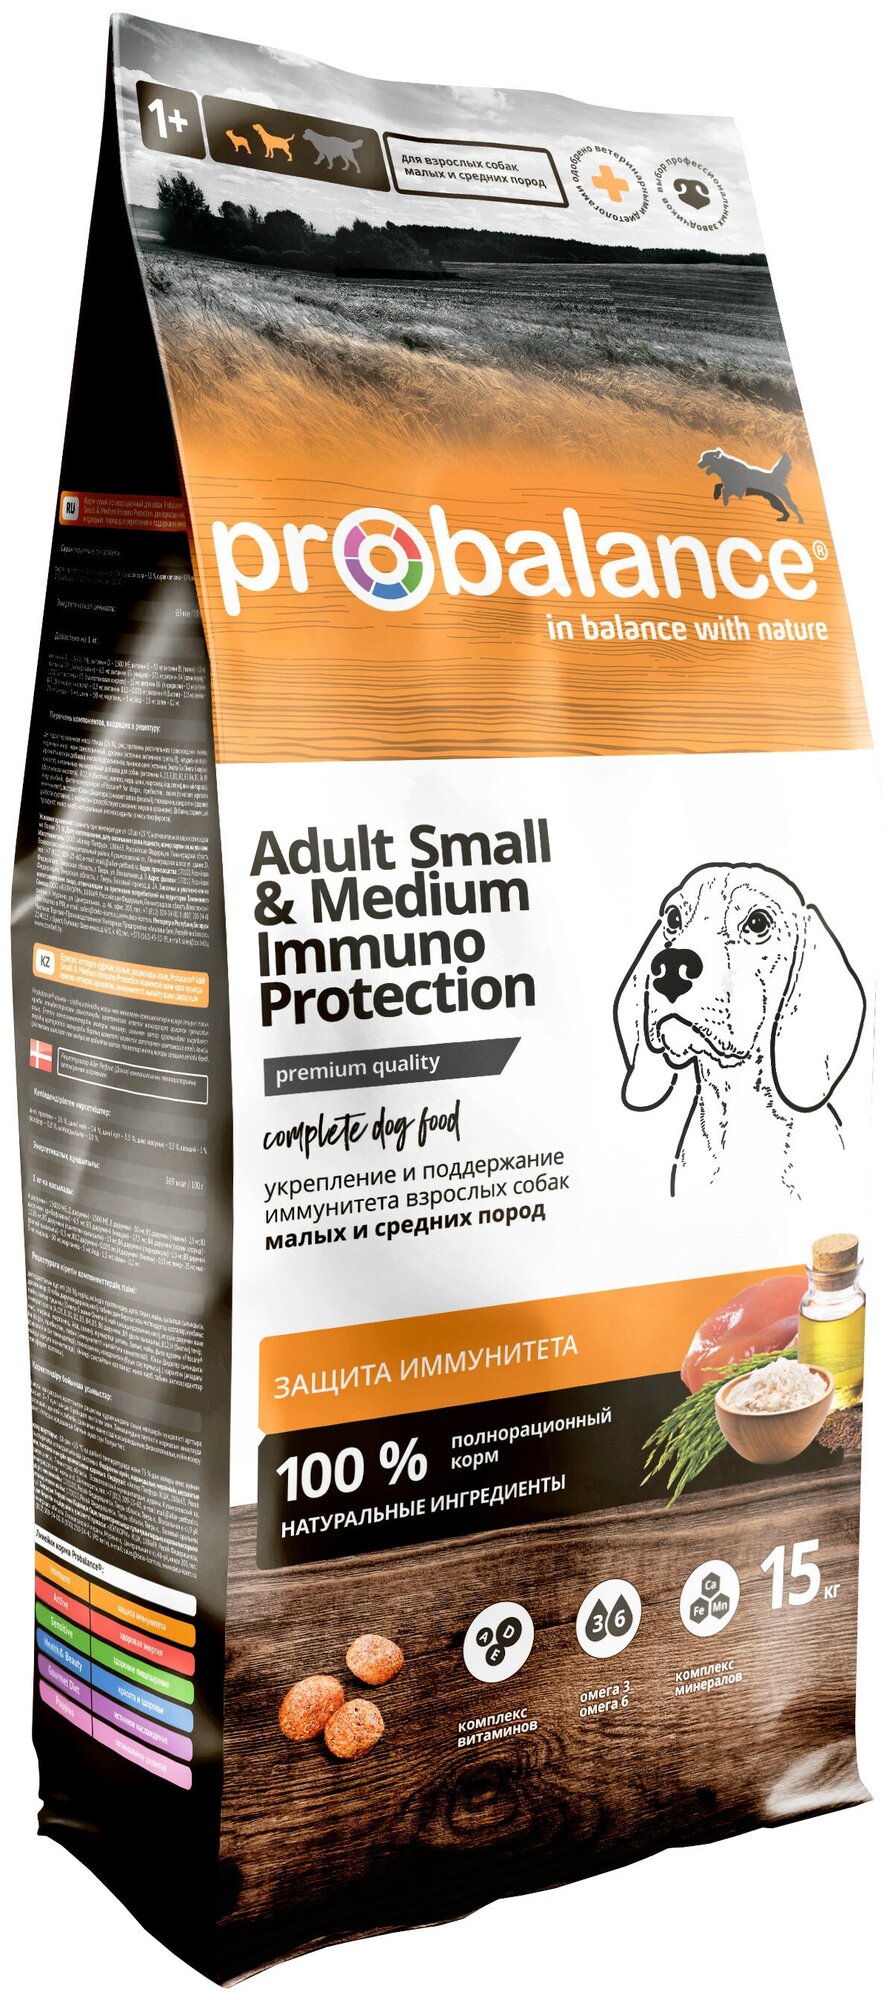 Сухой корм для собак ProBalance Immuno (для мелких и средних пород) 15 кг